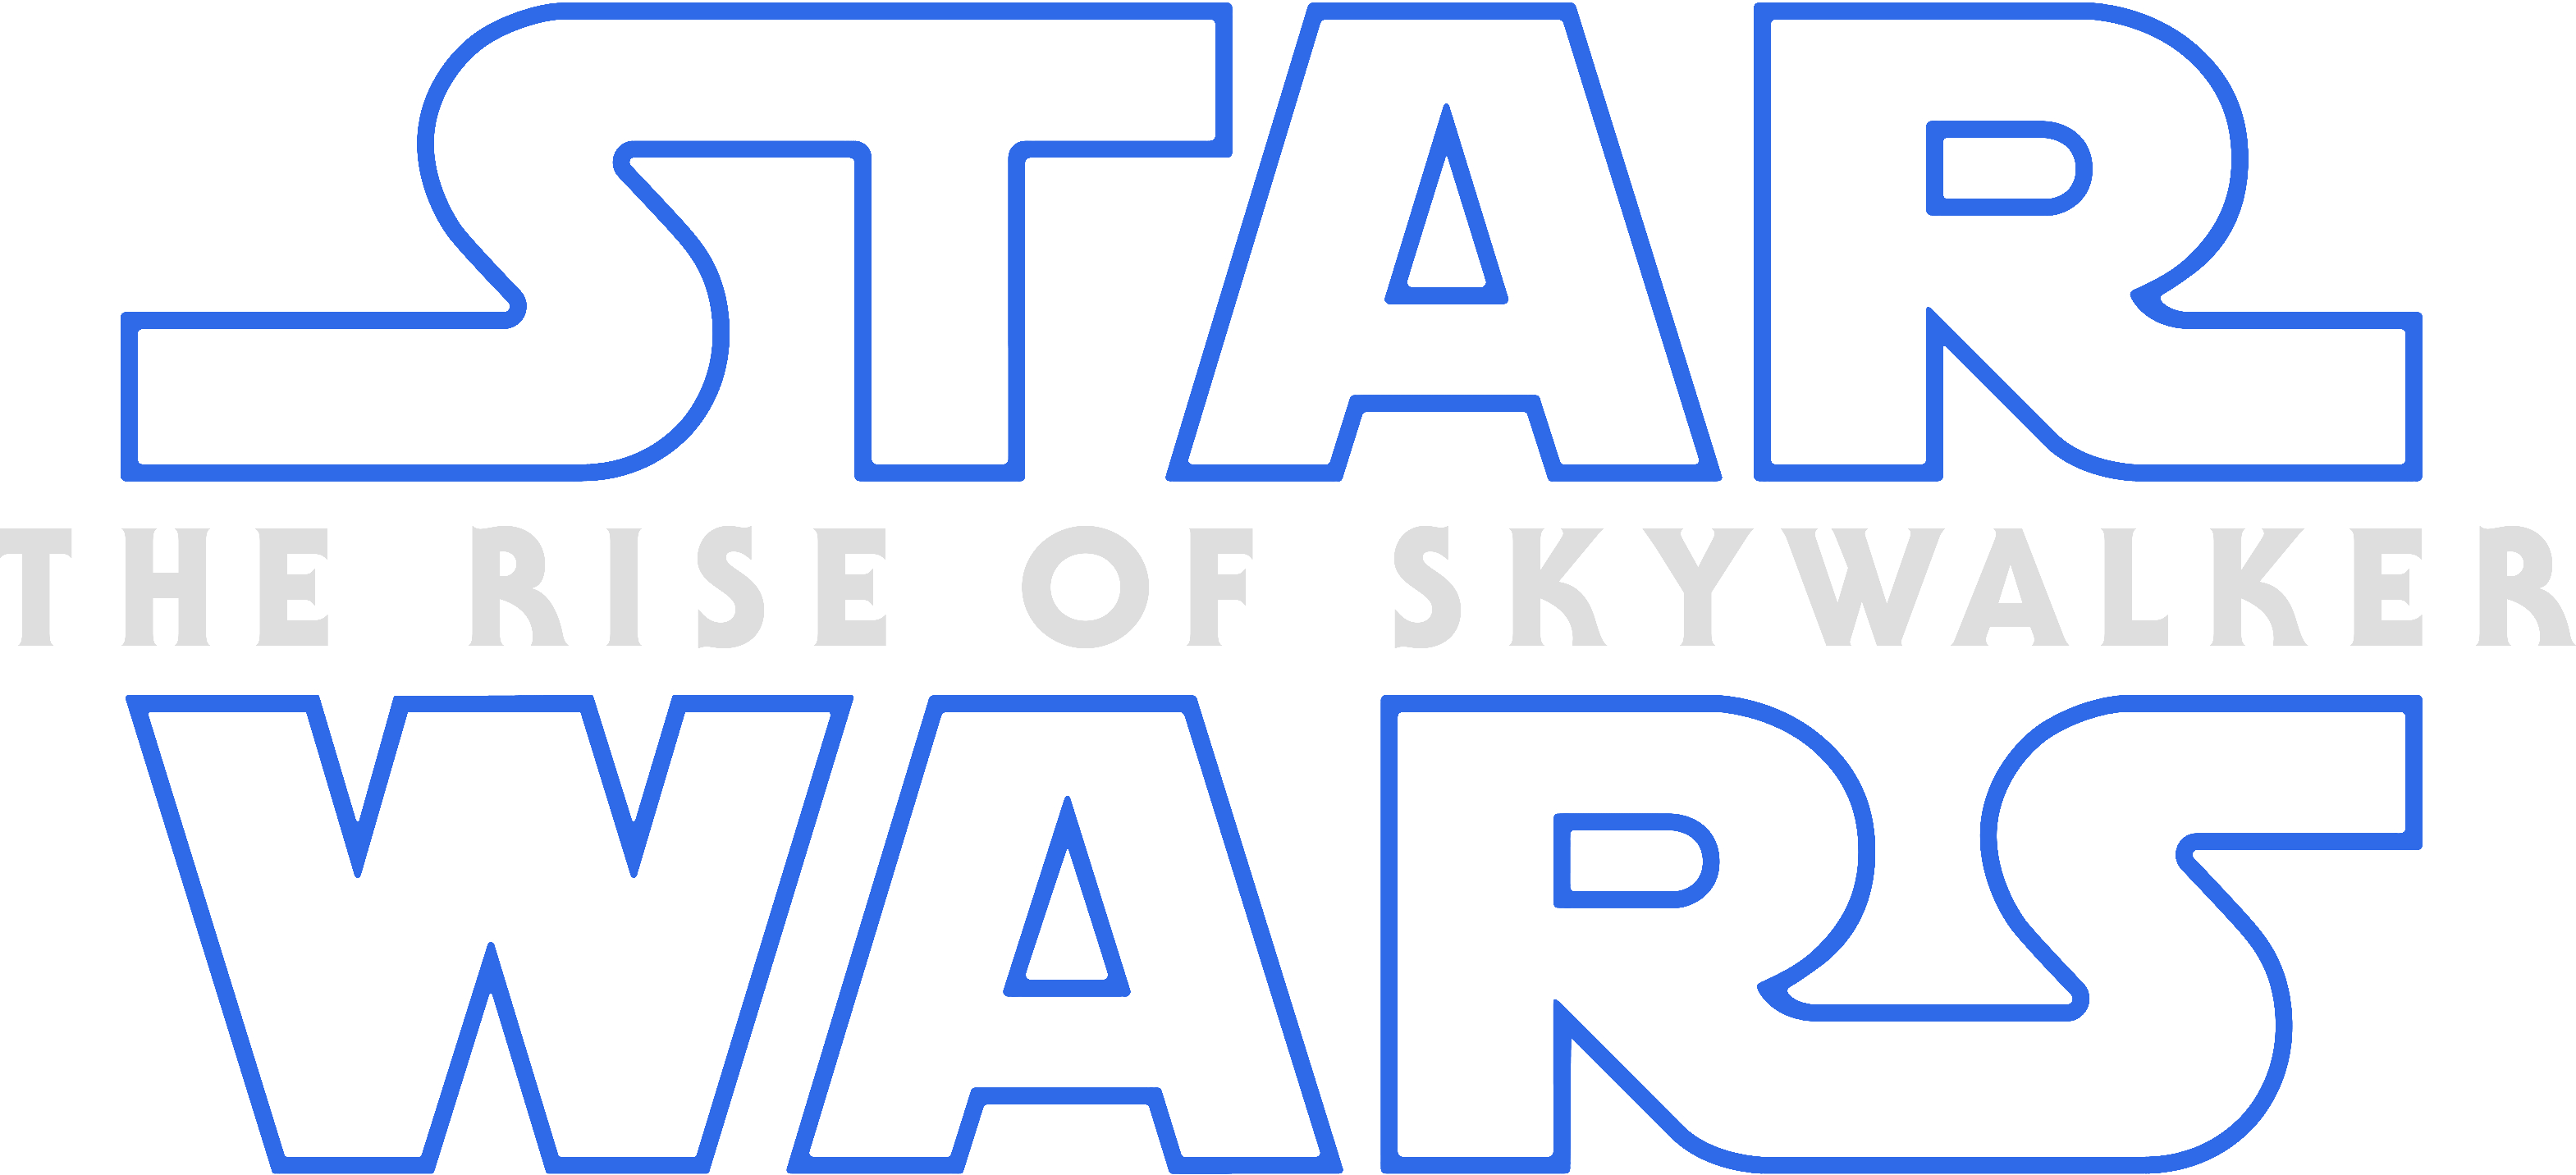 Download PNG image - Star Wars The Rise of Skywalker Logo PNG Image 